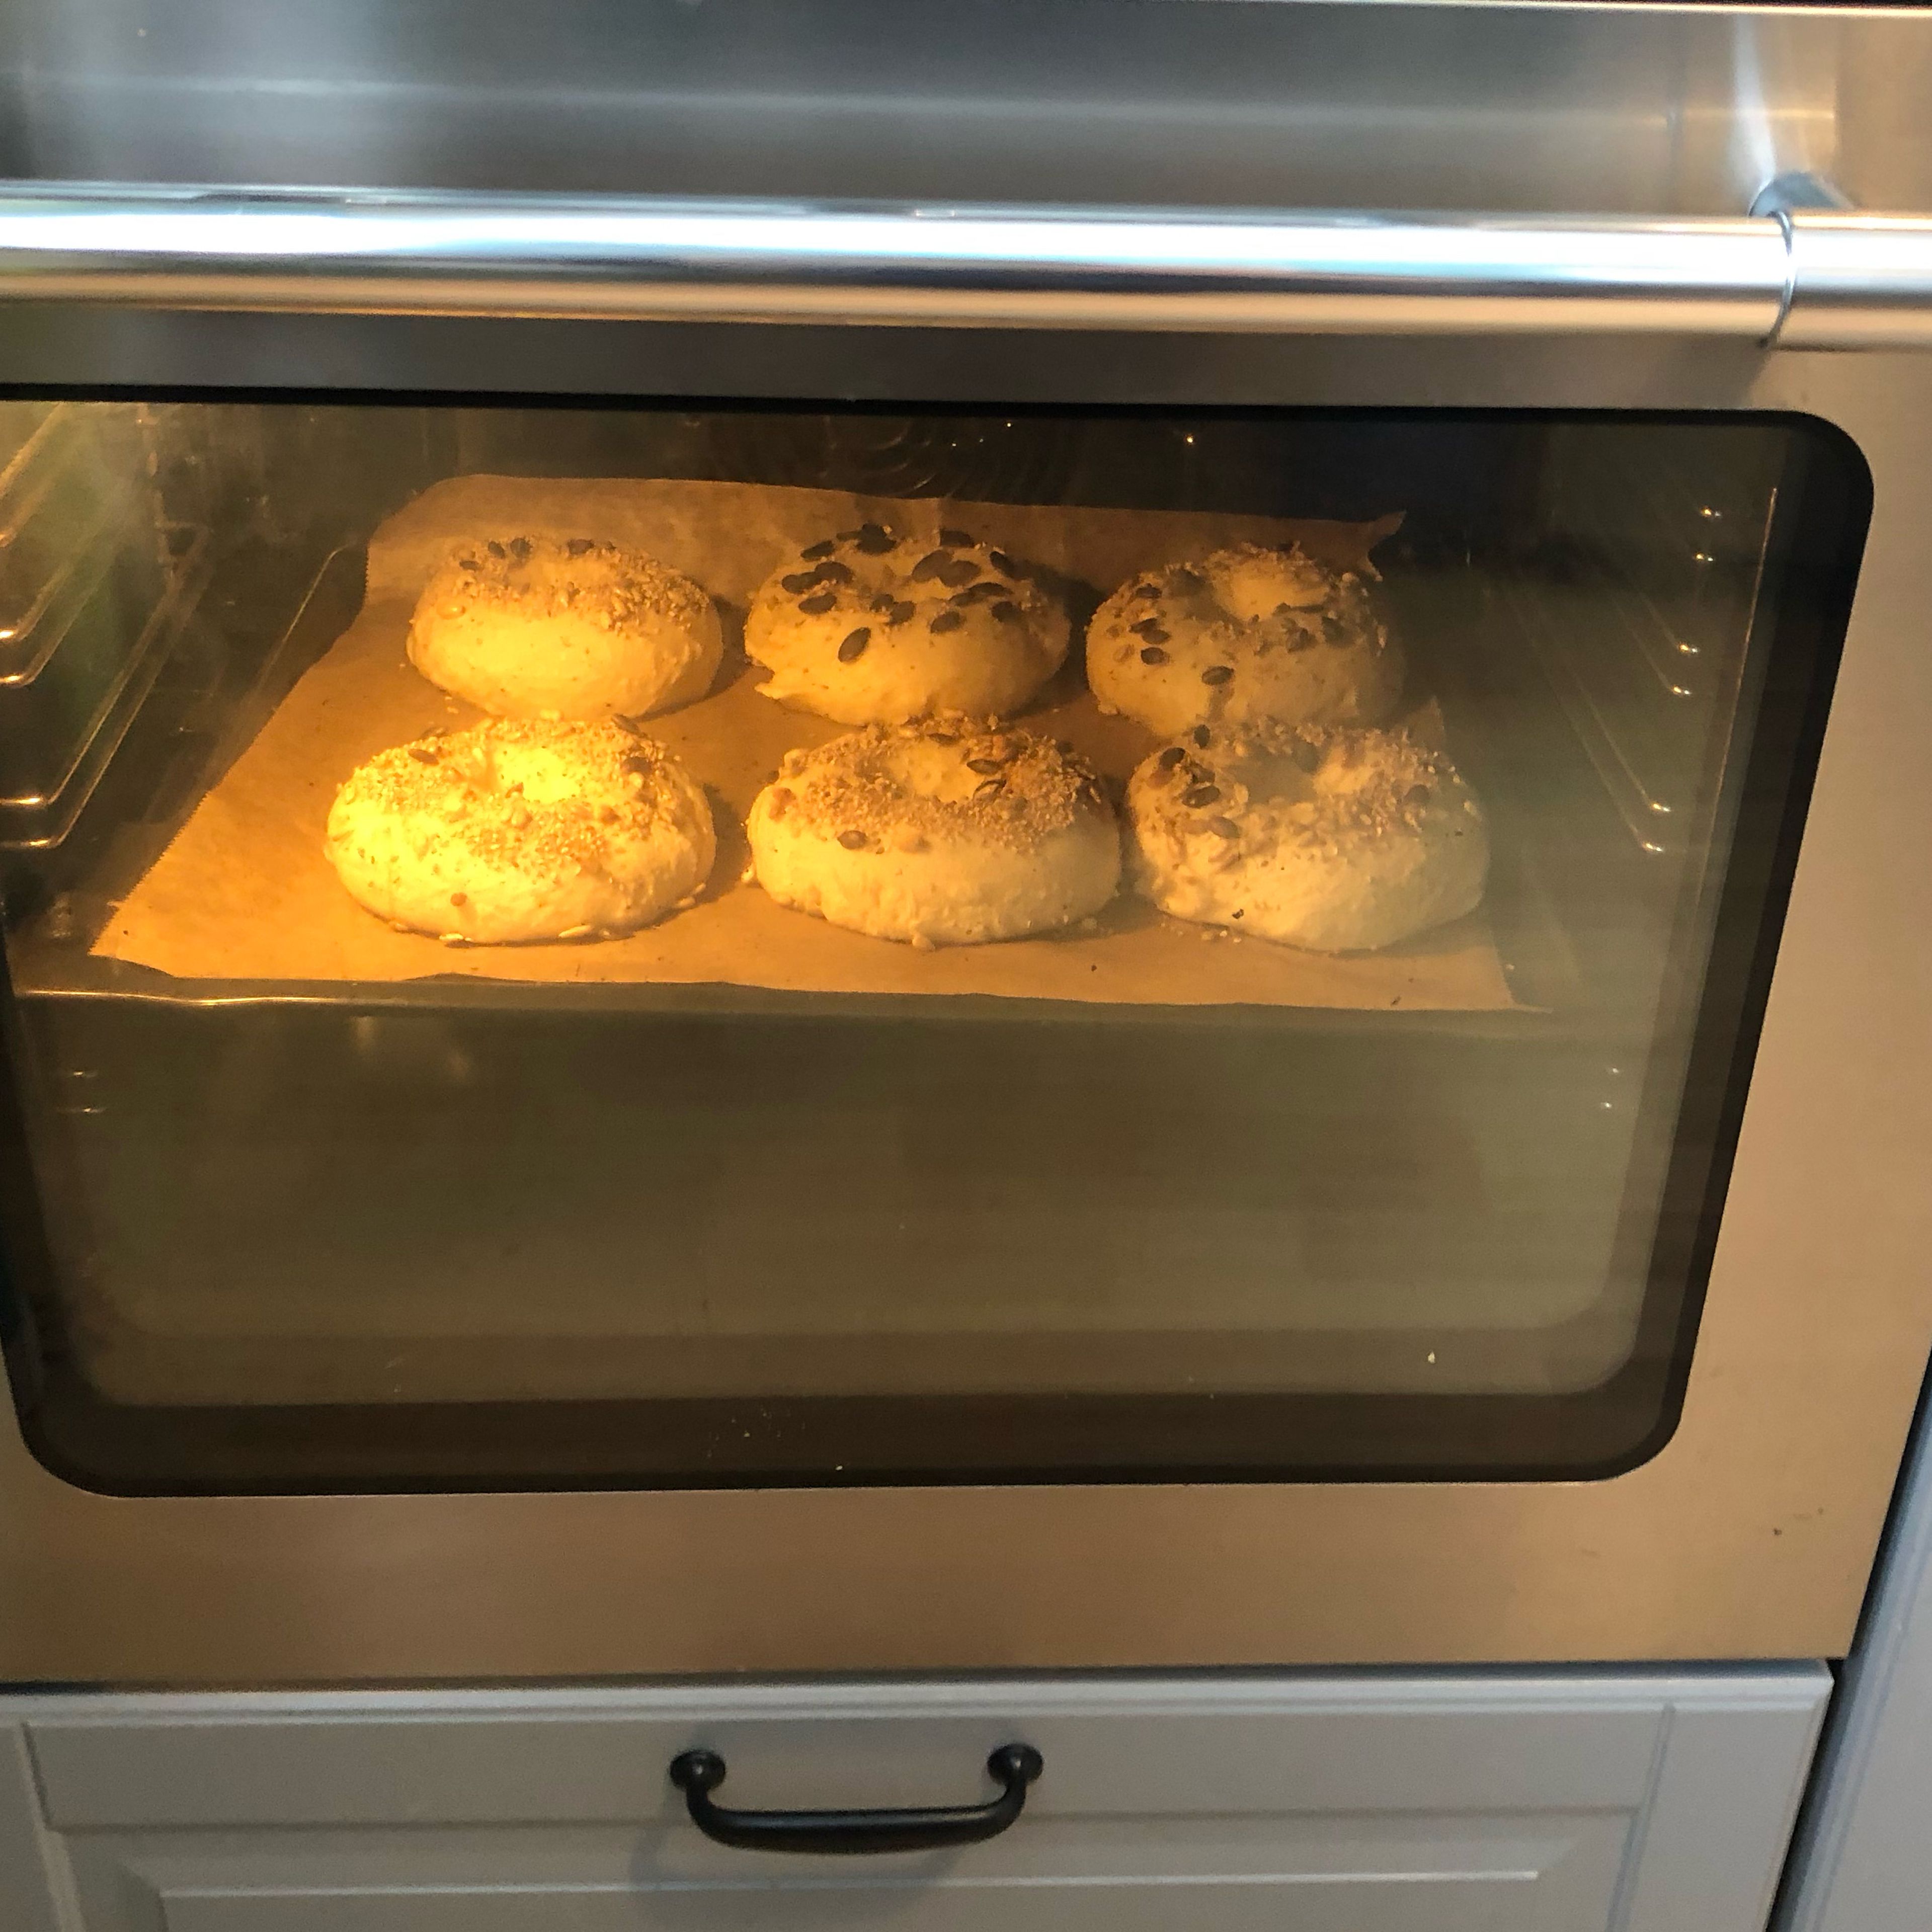 Die Bagels nun im vorgeheizten Ofen bei 200 Grad (Umluft) ca. 15 bis 20 Minuten backen bis sie goldbraun sind. Guten Appetit!